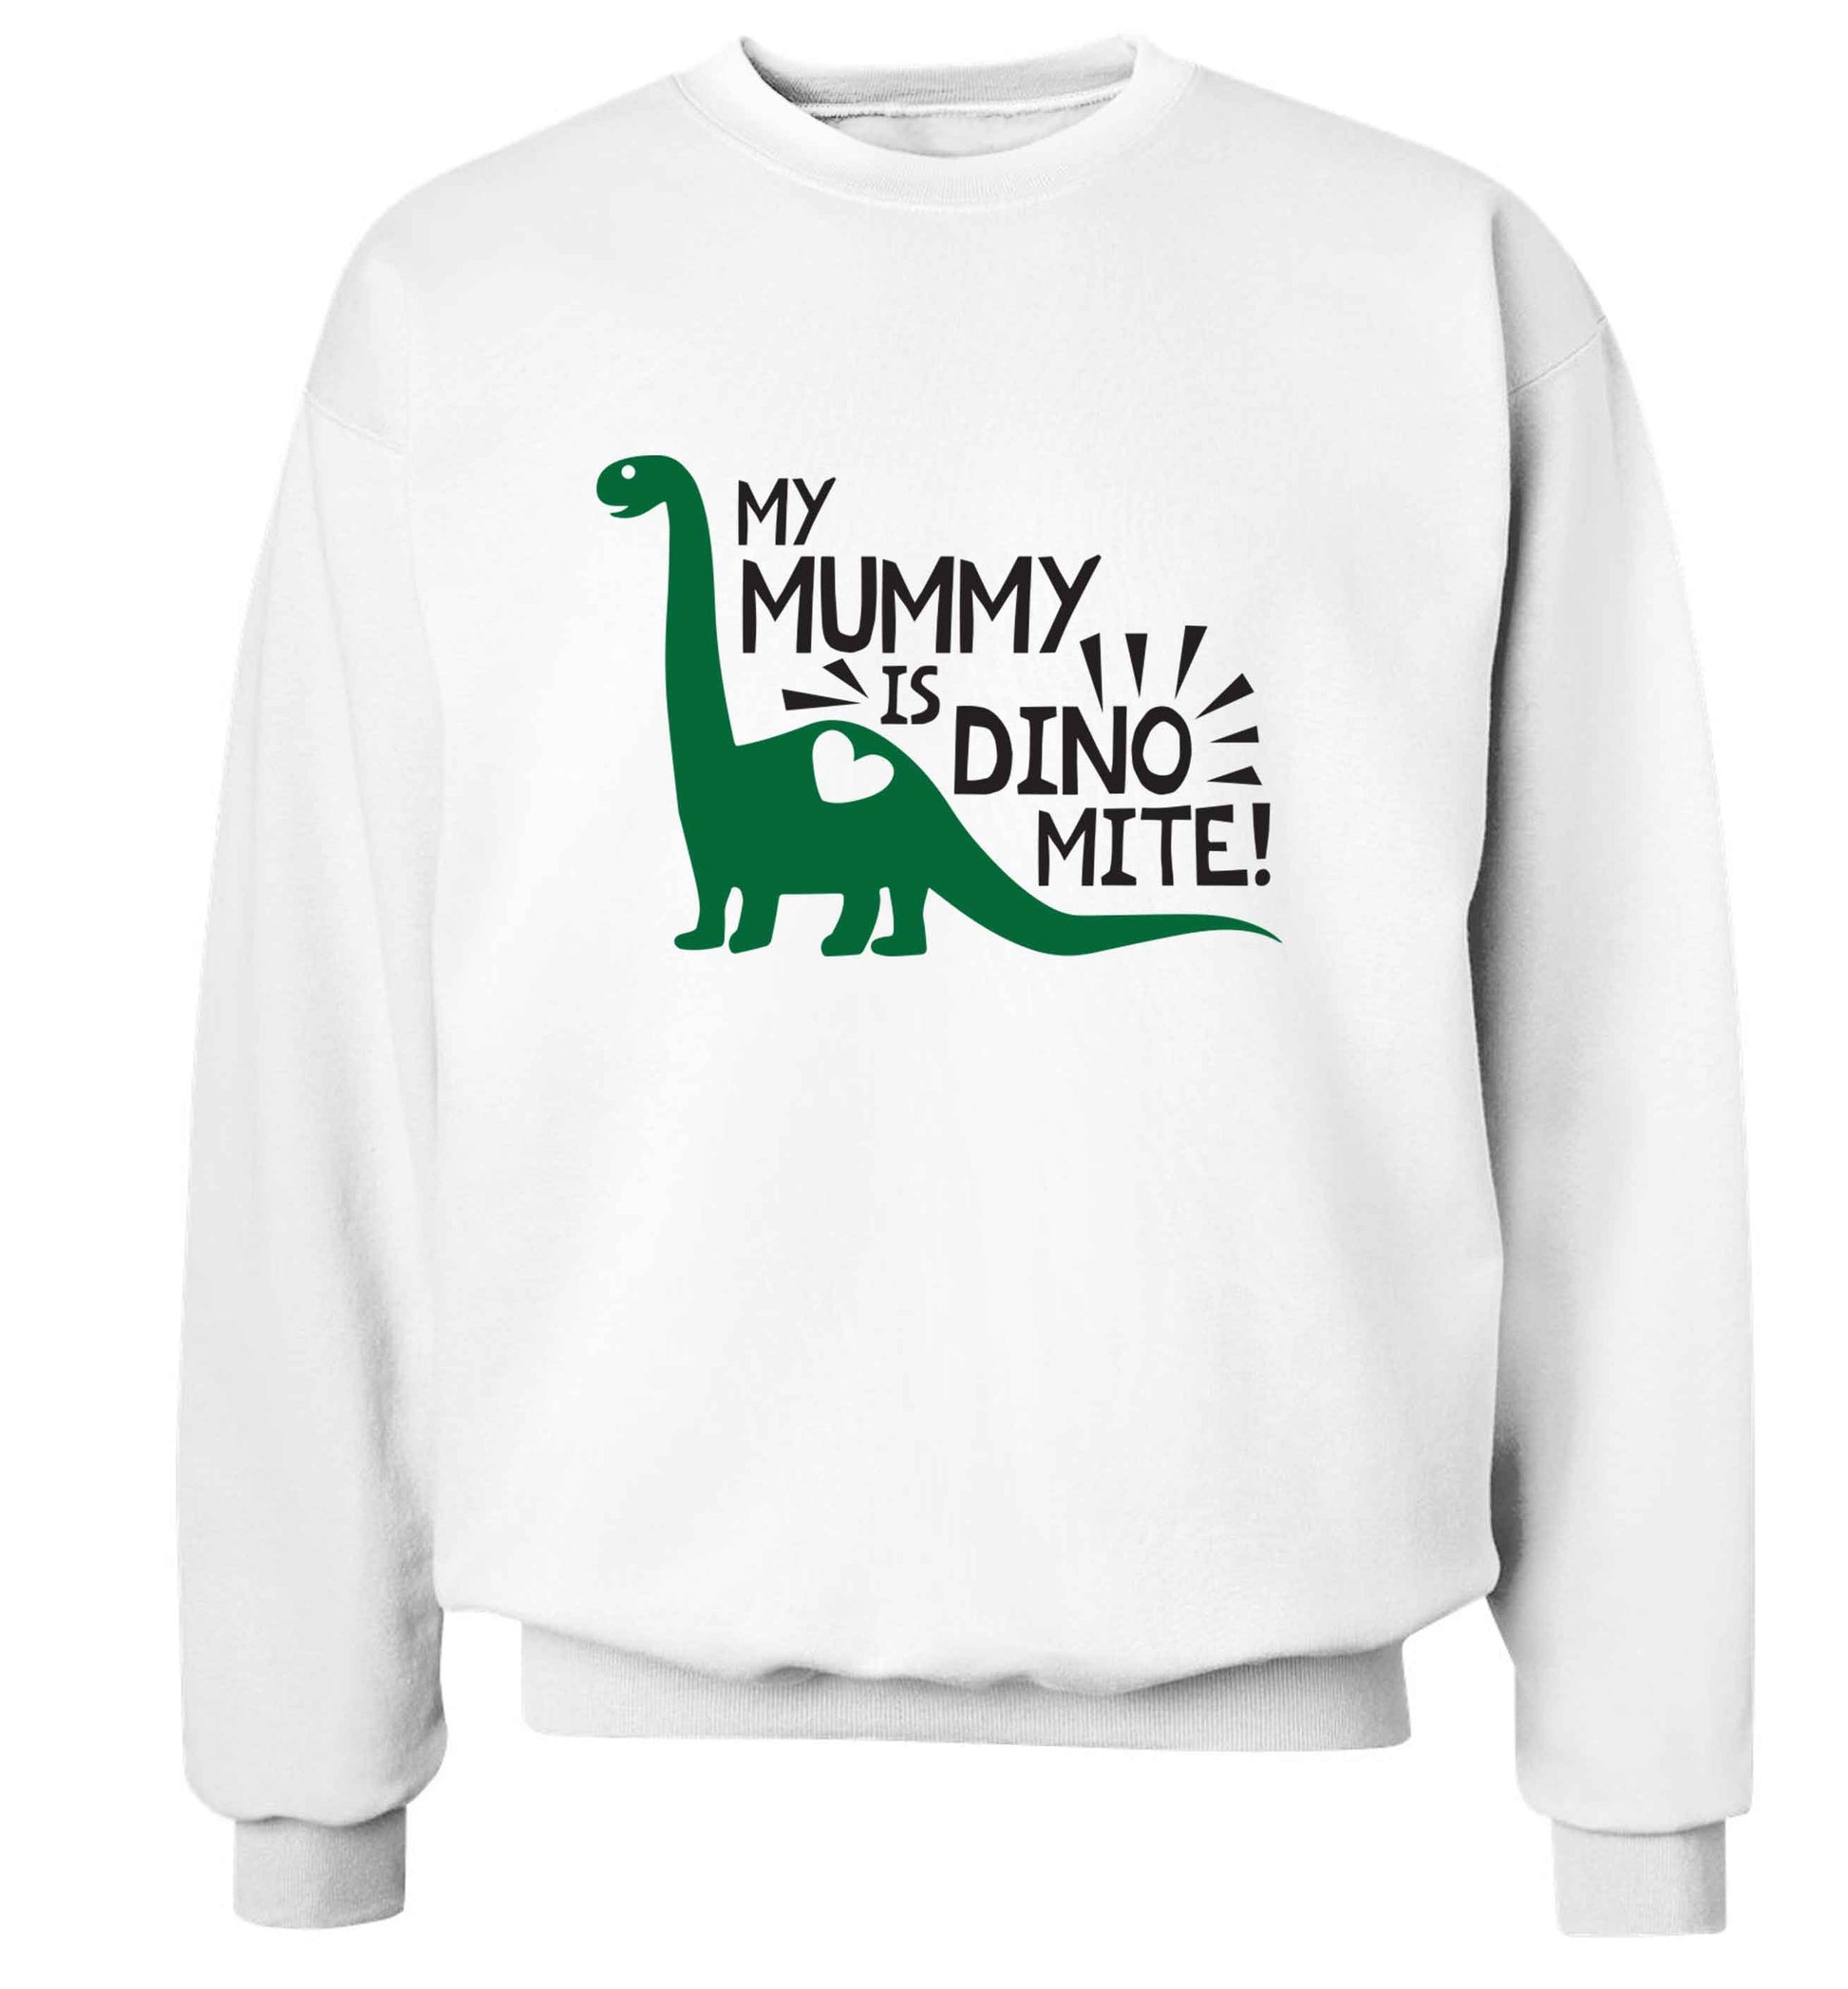 My mummy is dinomite adult's unisex white sweater 2XL